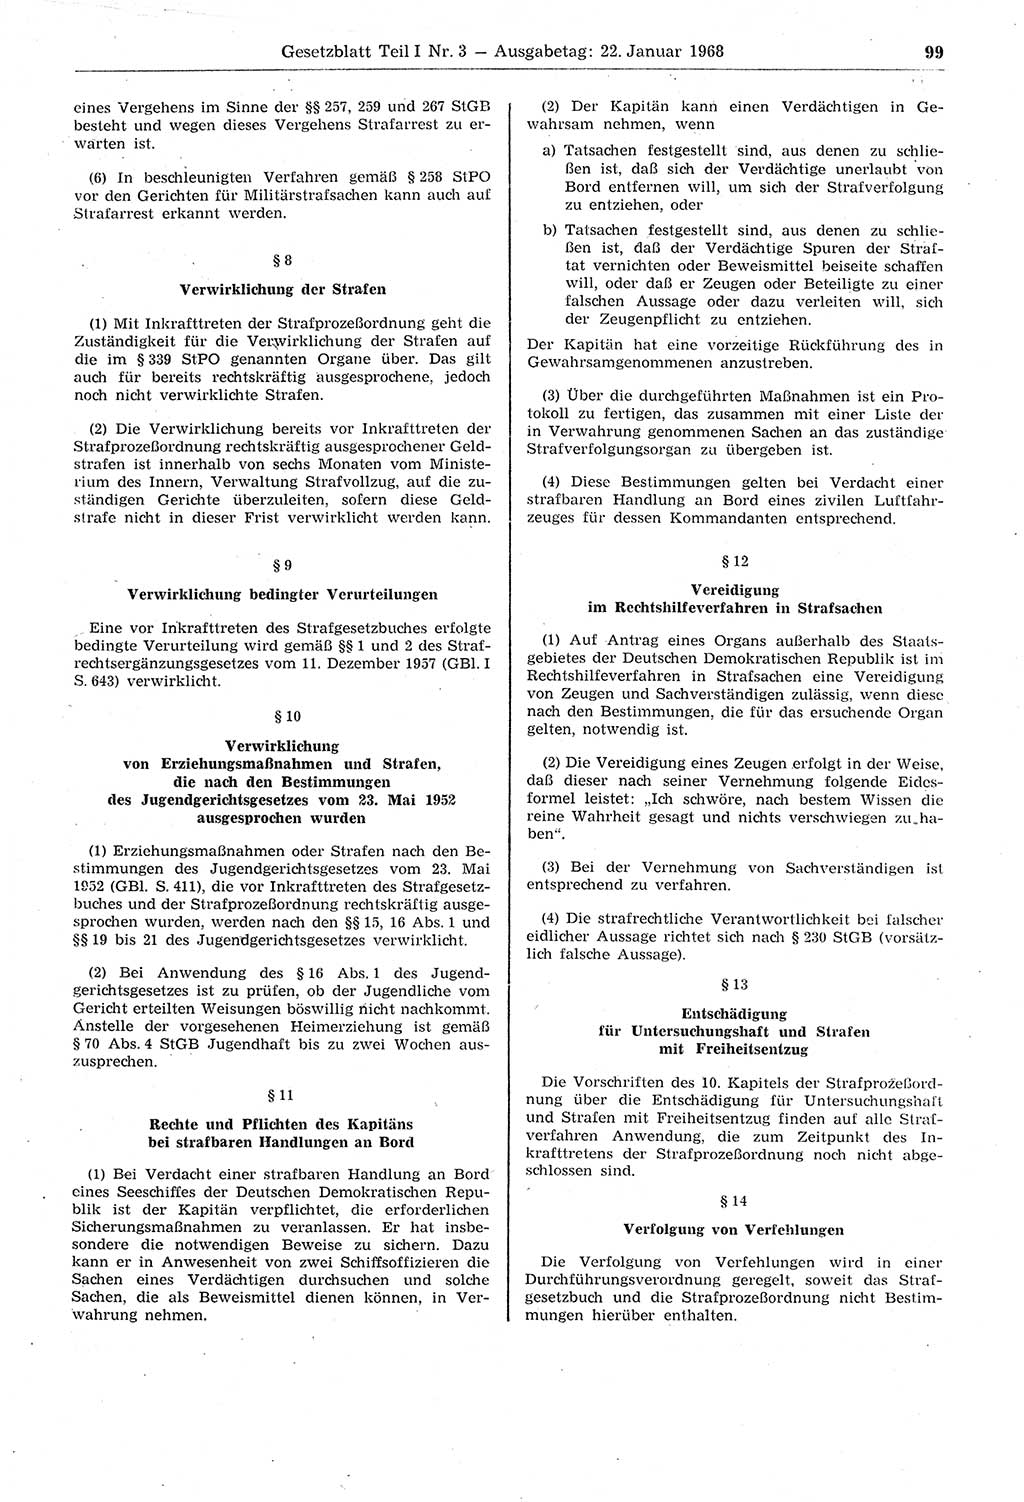 Gesetzblatt (GBl.) der Deutschen Demokratischen Republik (DDR) Teil Ⅰ 1968, Seite 99 (GBl. DDR Ⅰ 1968, S. 99)